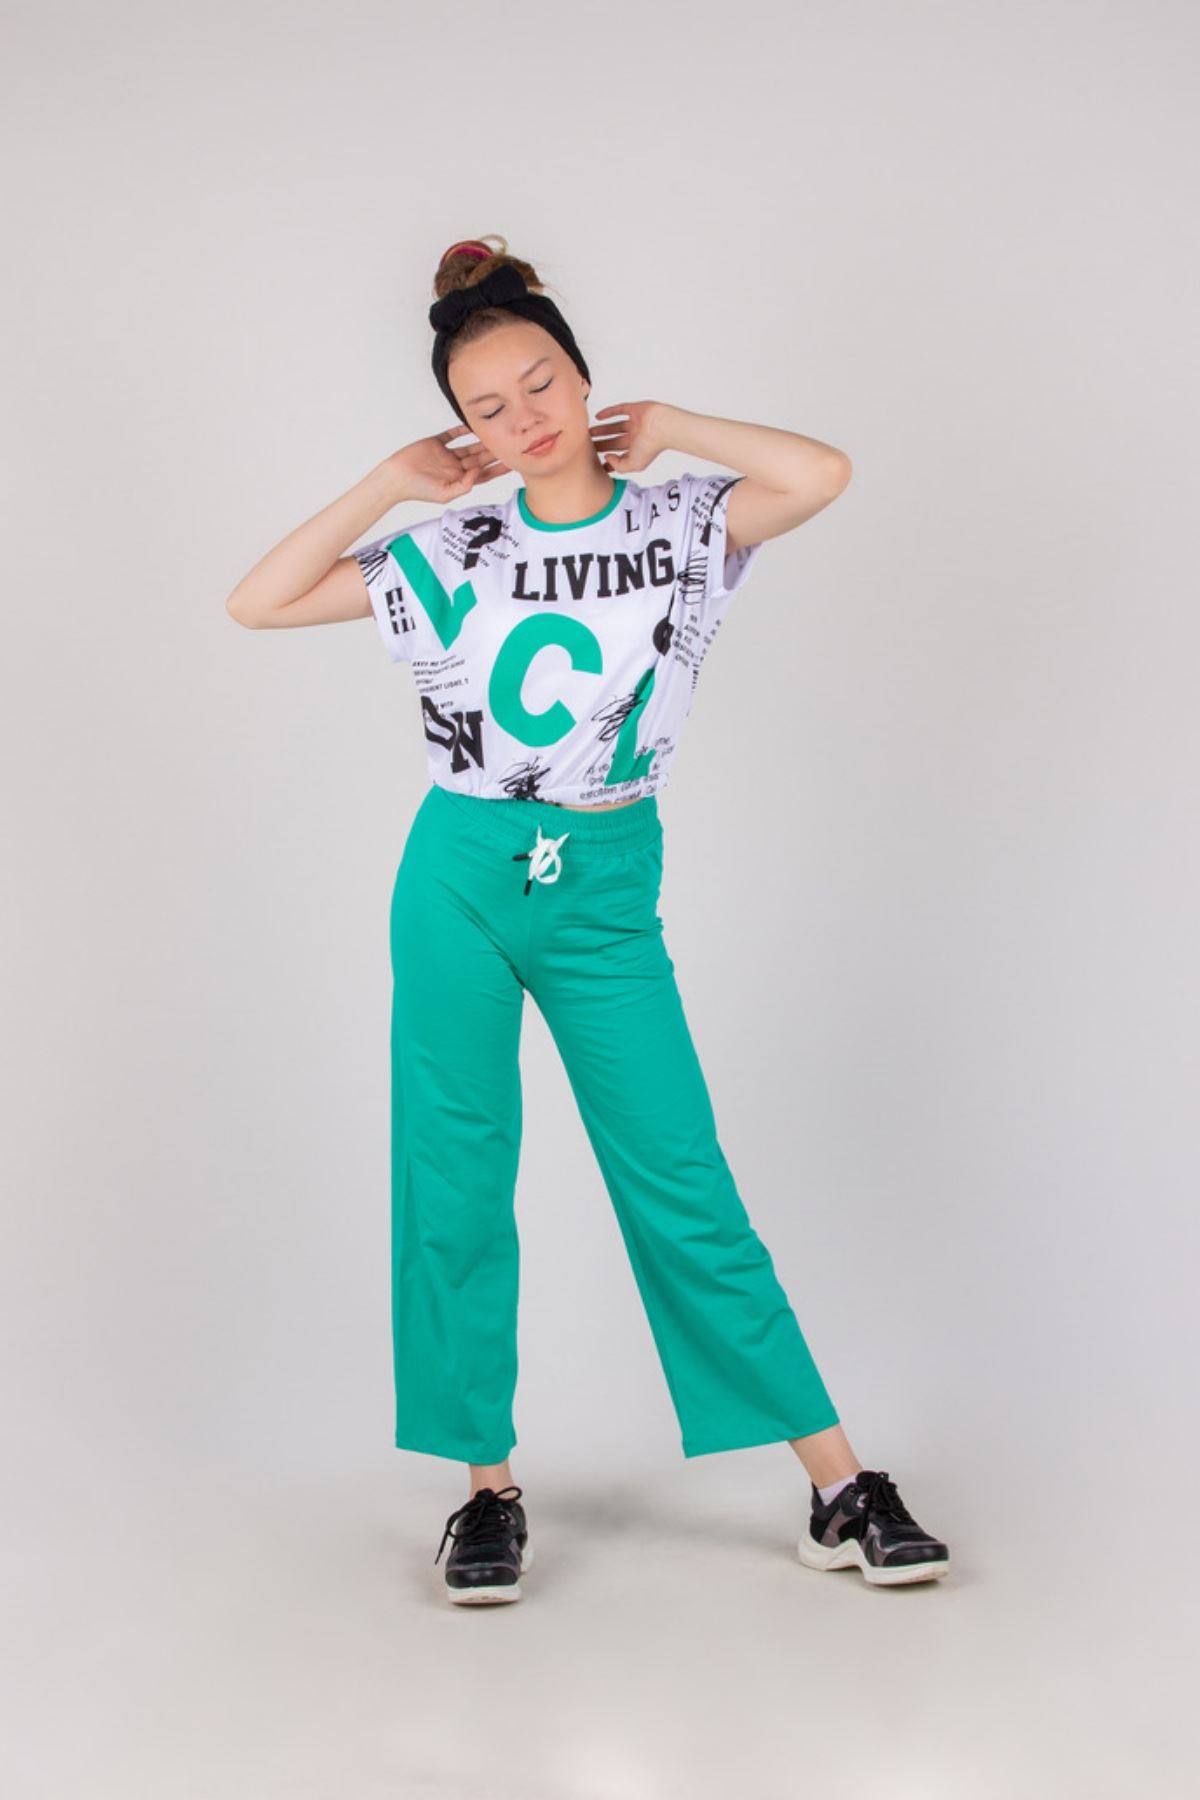 10-15 Yaş LcL Fashion Kız Çocuk Takım -Ekru/Benetton Yeşili